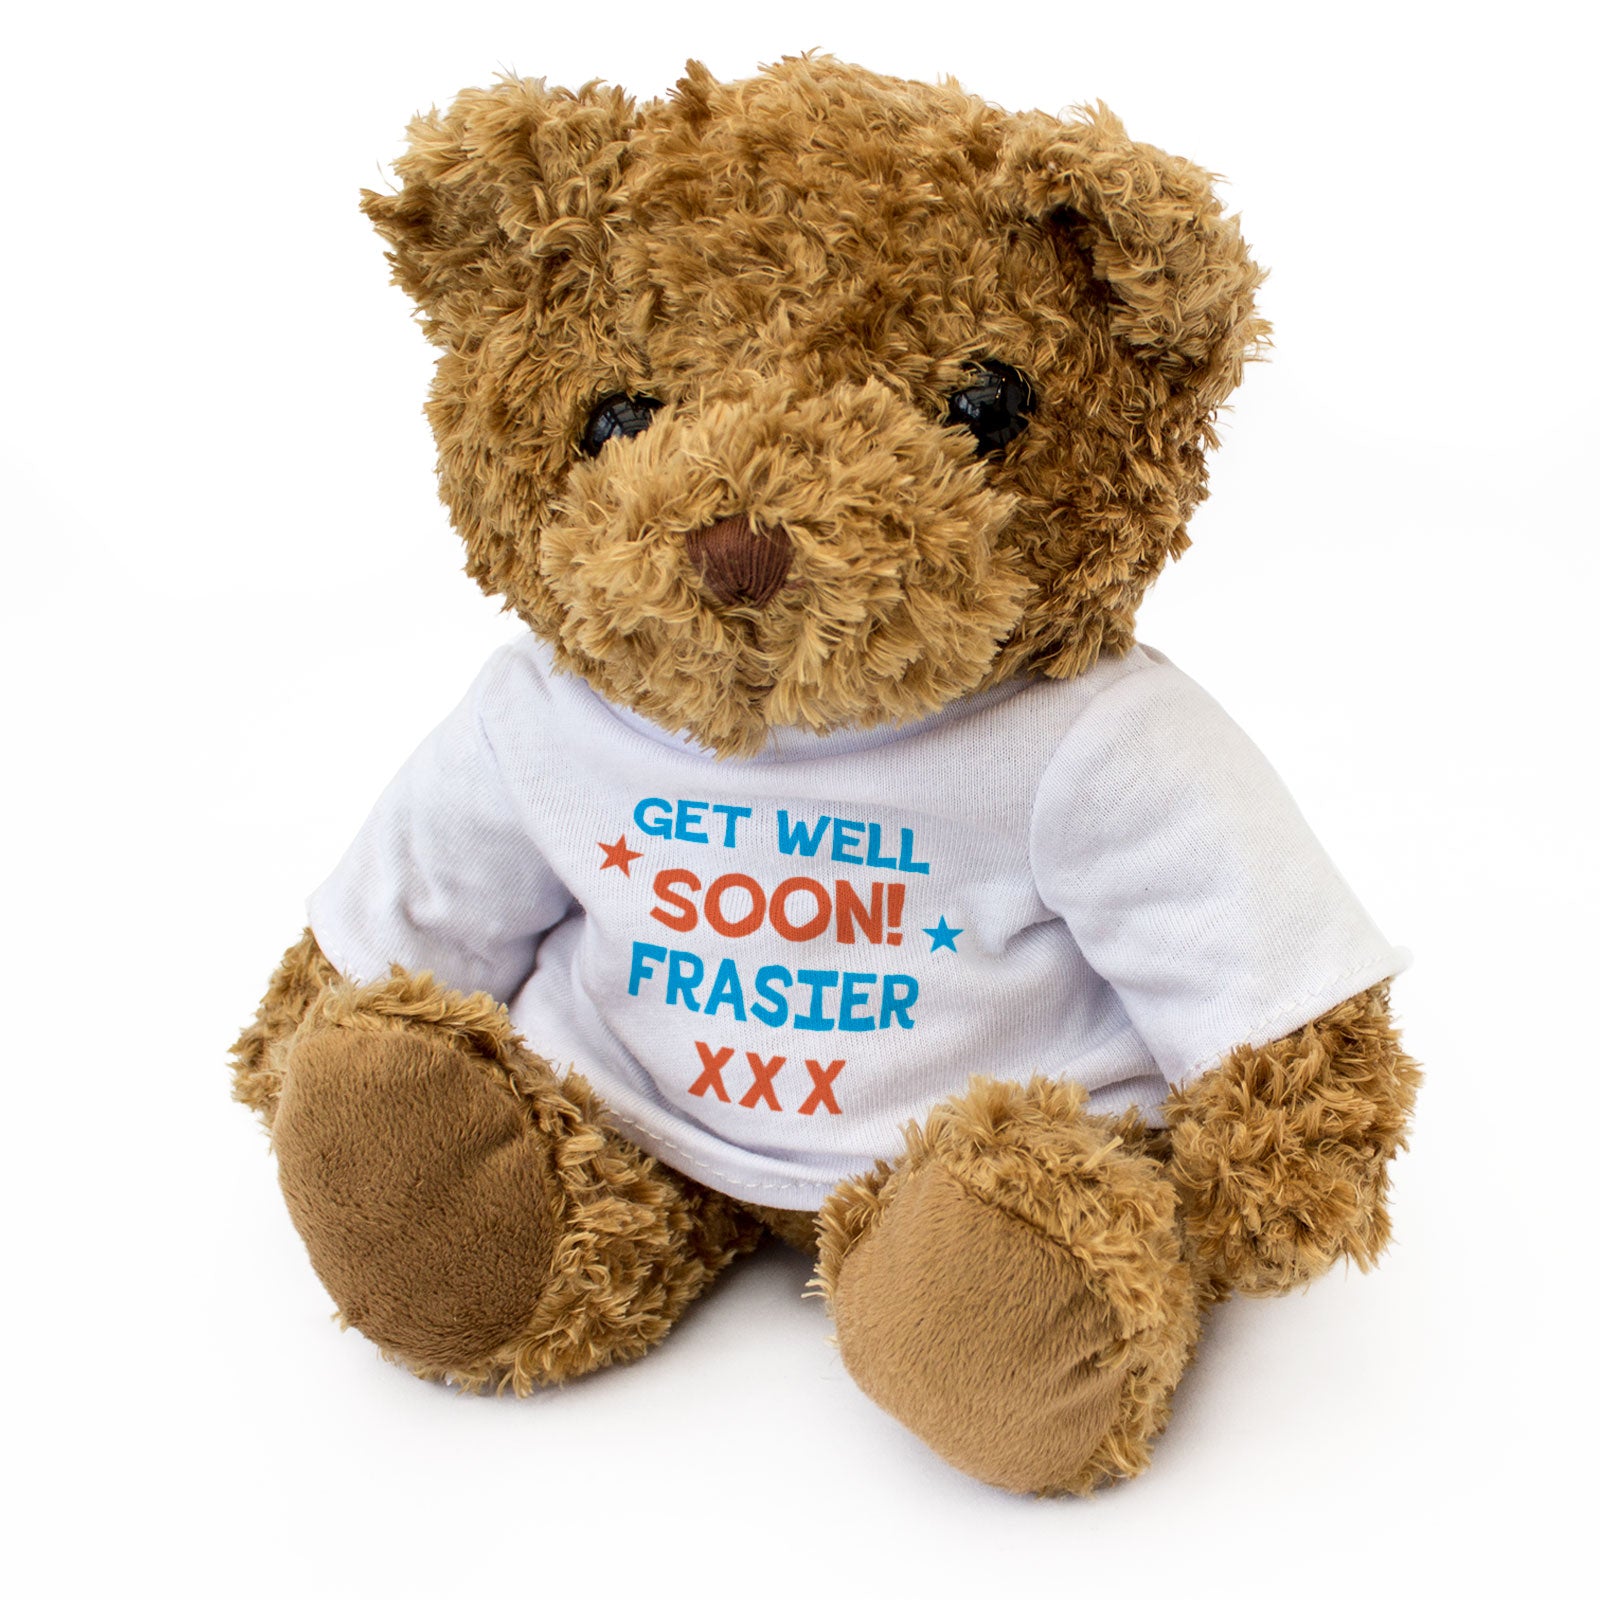 Get Well Soon Frasier - Teddy Bear